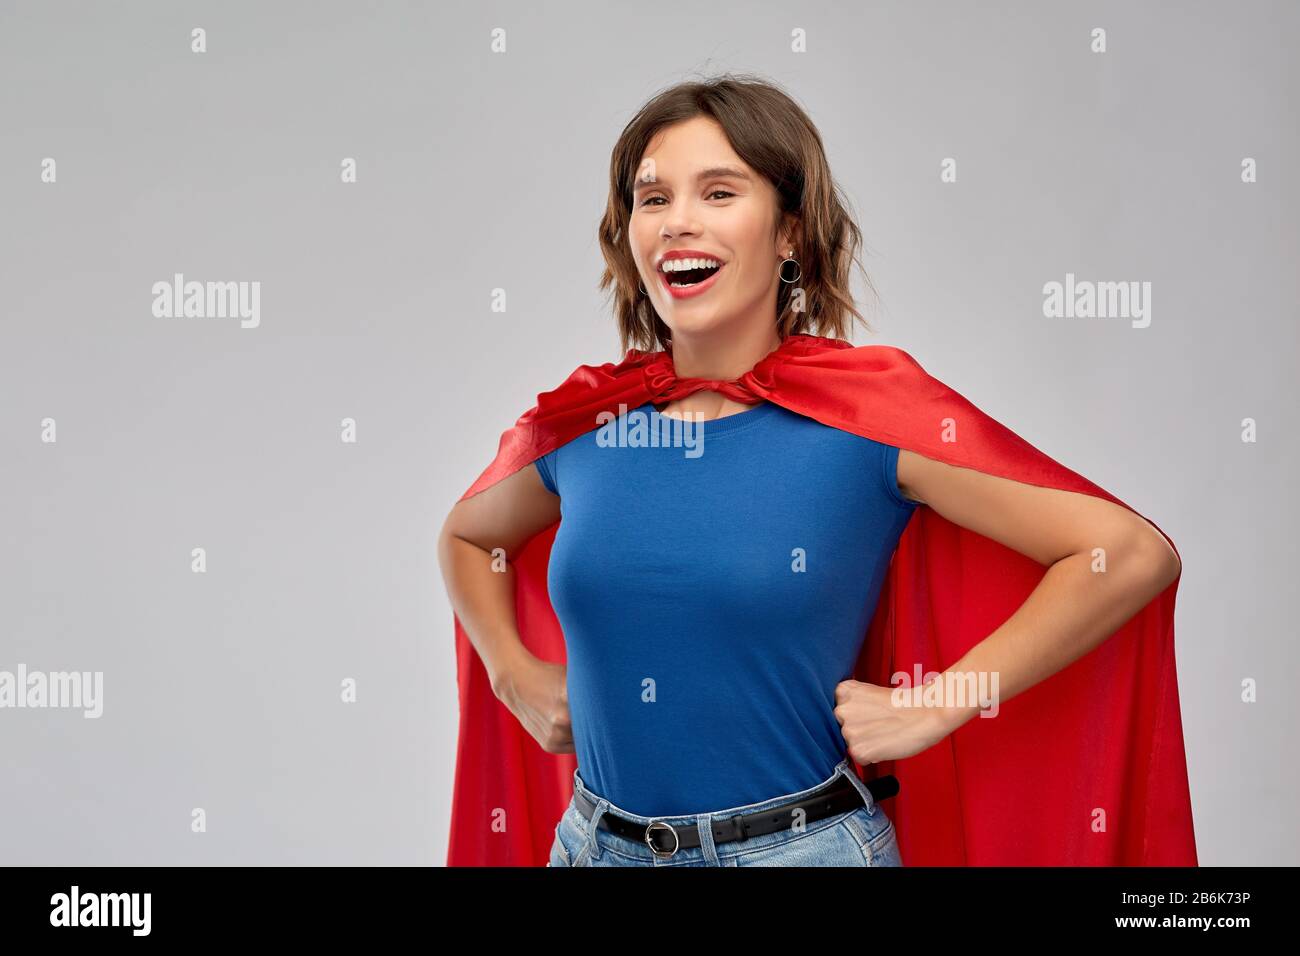 concetto di potere e di gente delle donne - donna felice in capo supereroe rosso su sfondo grigio Foto Stock